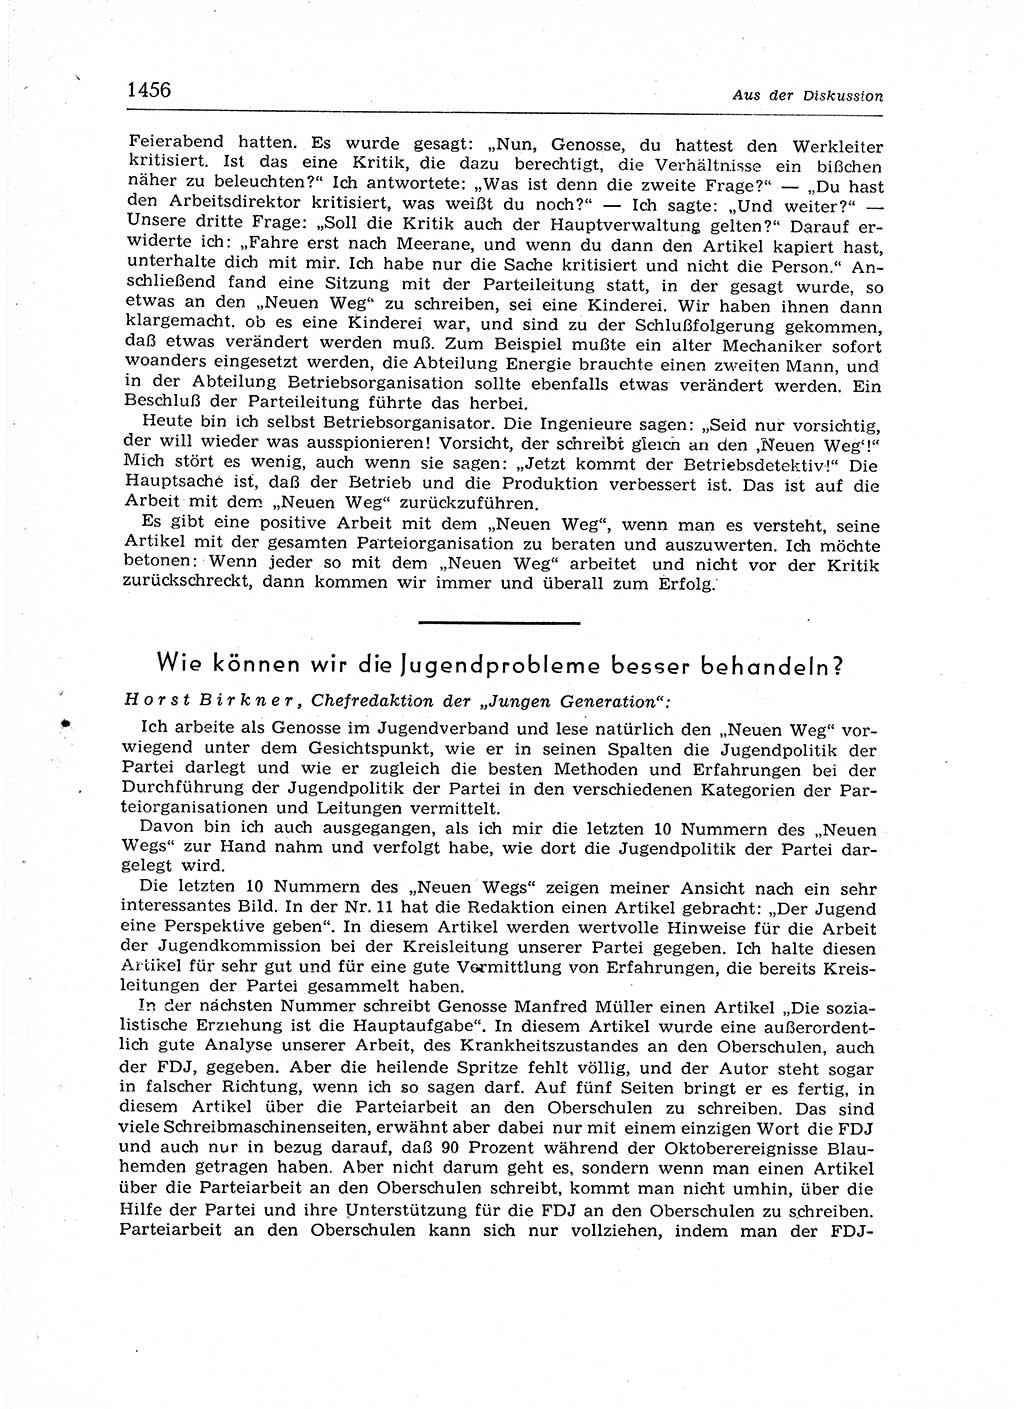 Neuer Weg (NW), Organ des Zentralkomitees (ZK) der SED (Sozialistische Einheitspartei Deutschlands) für Fragen des Parteiaufbaus und des Parteilebens, 12. Jahrgang [Deutsche Demokratische Republik (DDR)] 1957, Seite 1456 (NW ZK SED DDR 1957, S. 1456)